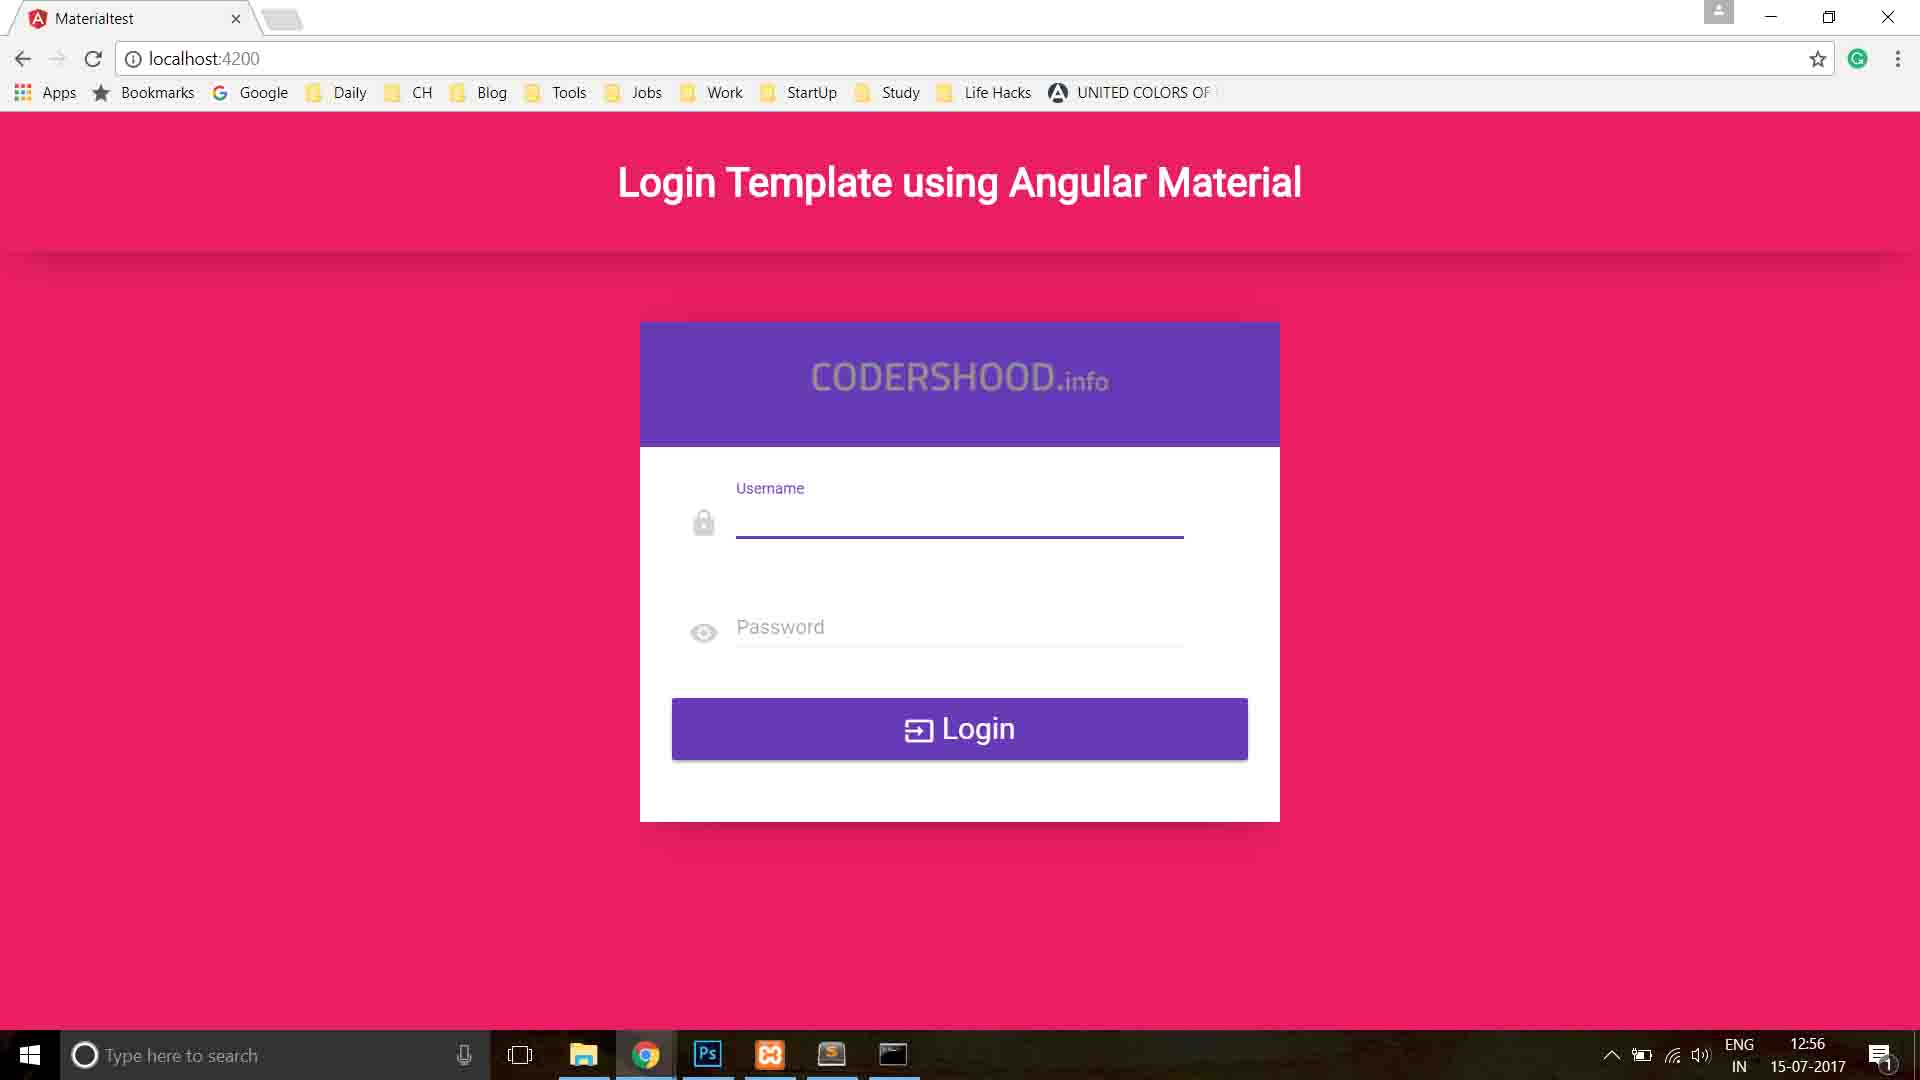 Login template using Angular Material - Codershood